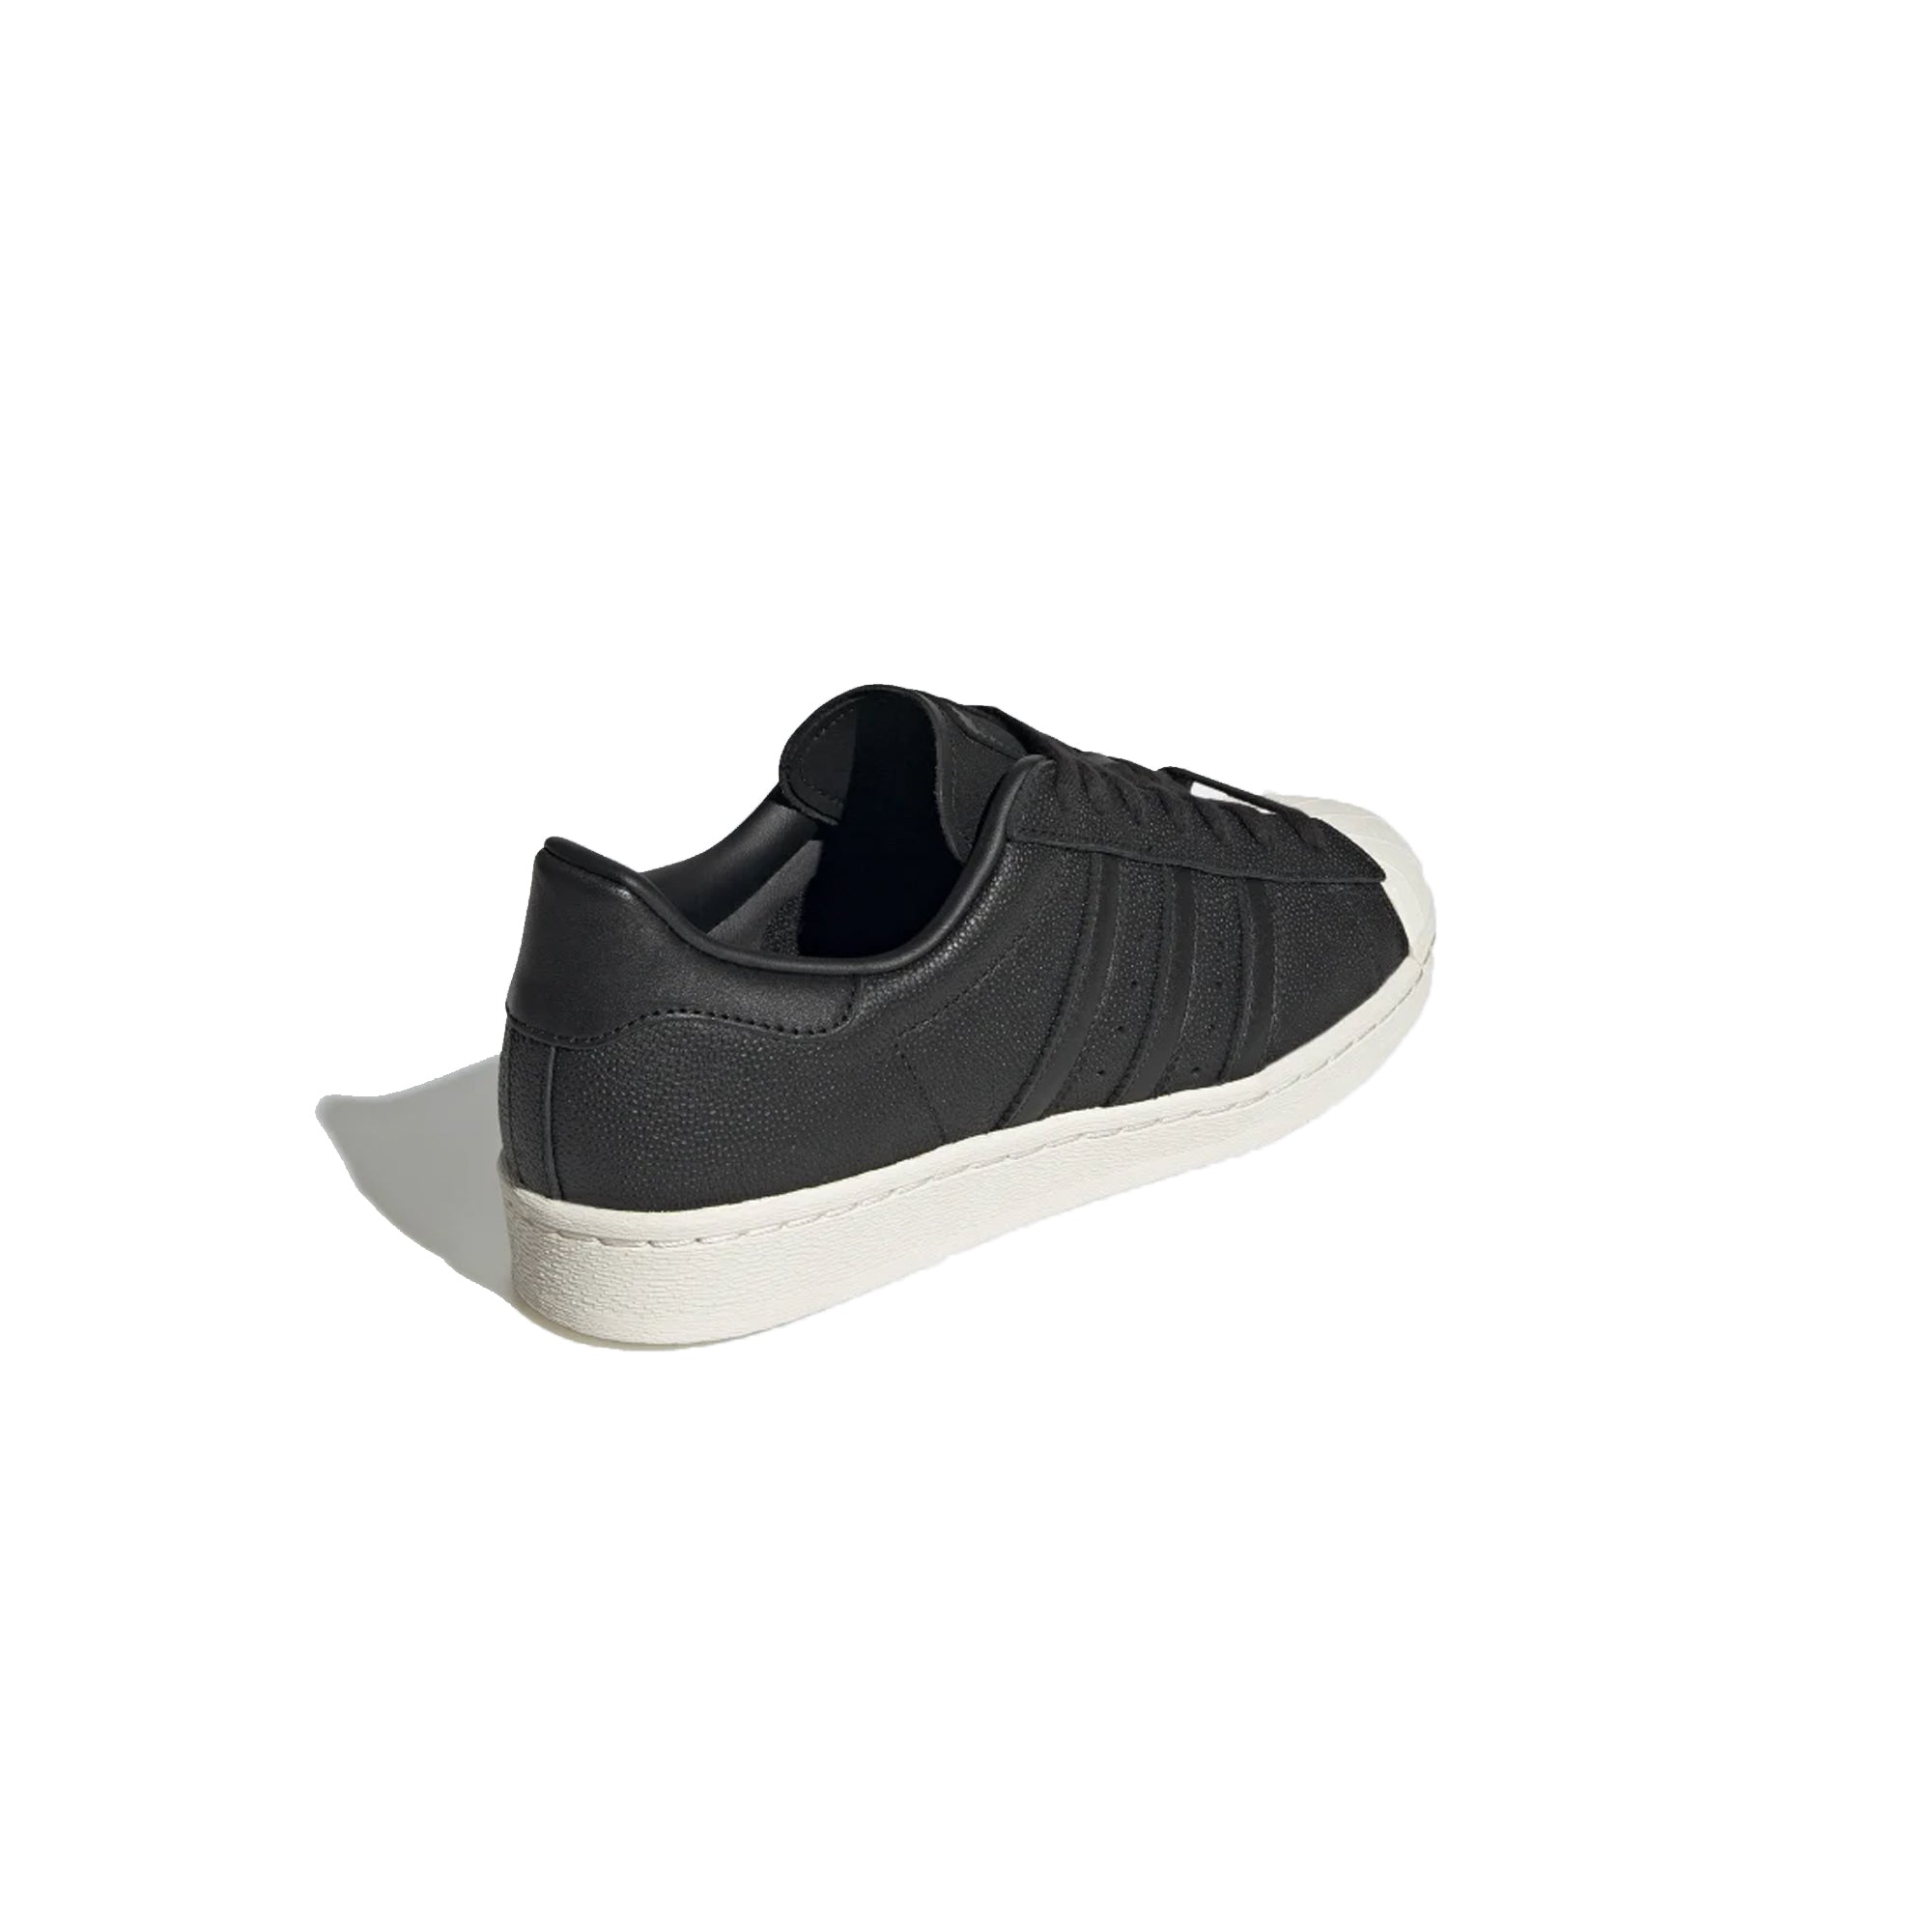 Men's shoes adidas Superstar 82 Core Black/ Core White/ Core Black